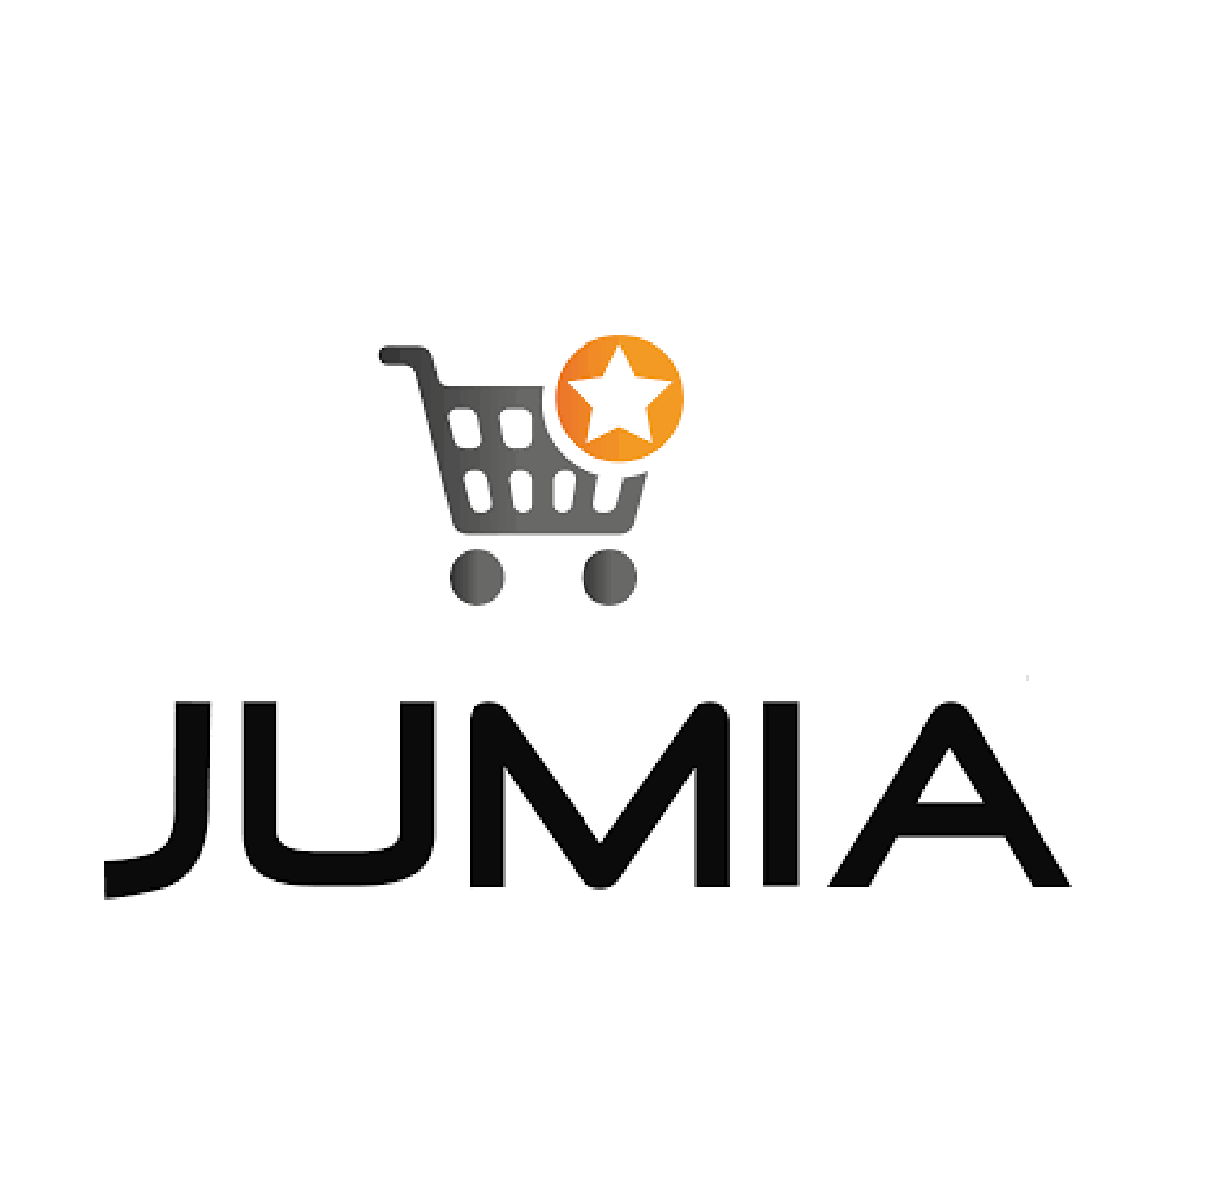 جوميا jumia